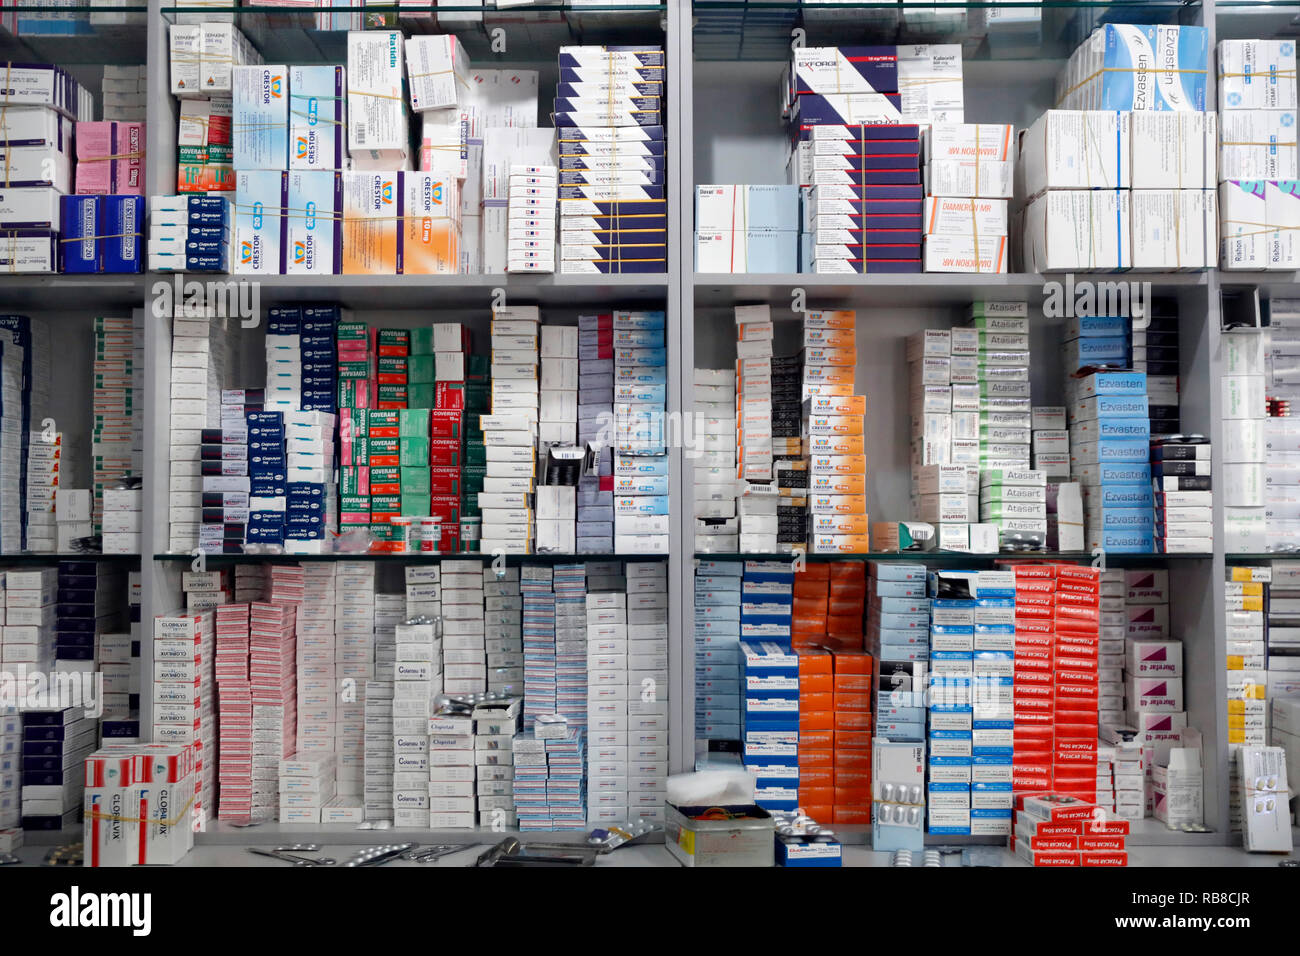 Panier De Rangement De La Pharmacie Image stock - Image du pillule,  clinique: 262032905